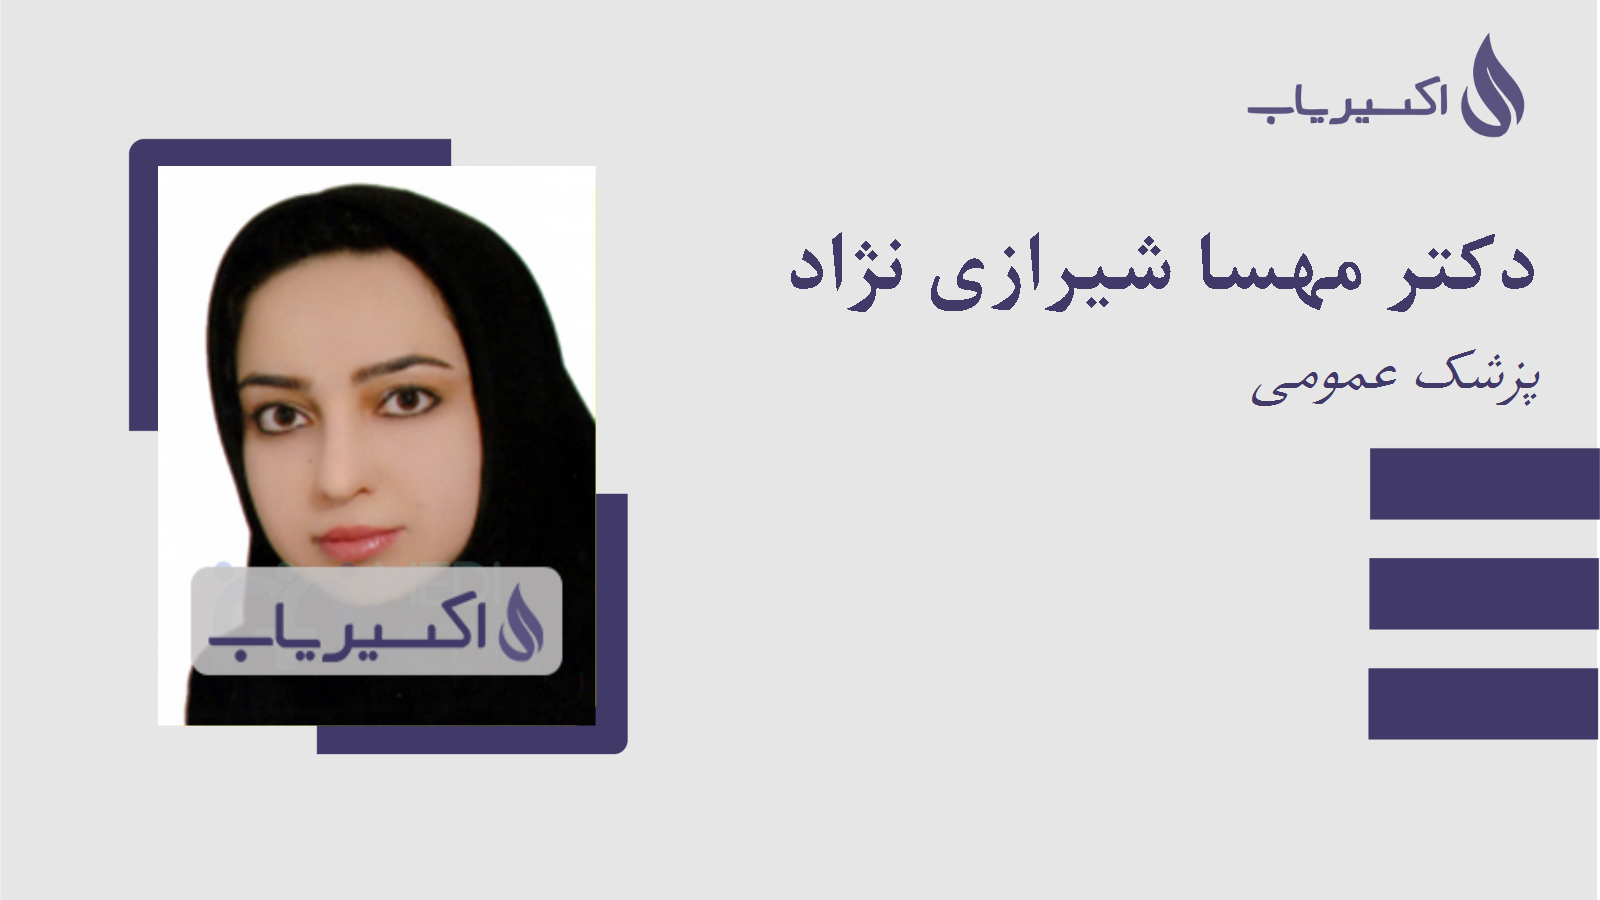 مطب دکتر مهسا شیرازی نژاد